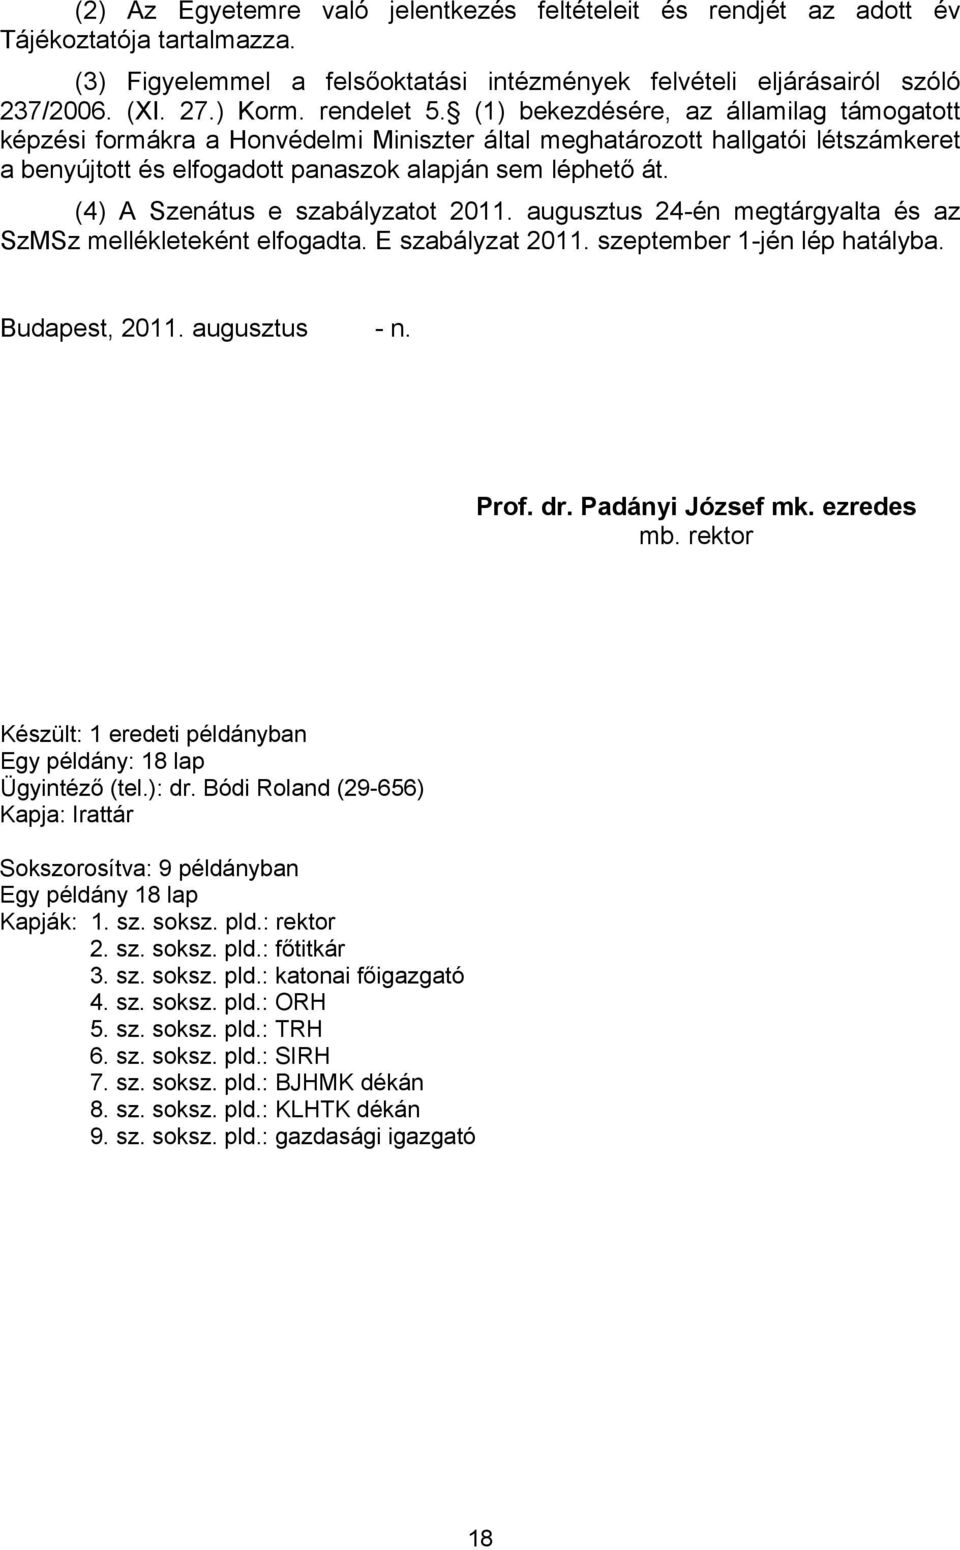 (4) A Szenátus e szabályzatot 2011. augusztus 24-én megtárgyalta és az SzMSz mellékleteként elfogadta. E szabályzat 2011. szeptember 1-jén lép hatályba. Budapest, 2011. augusztus - n. Prof. dr.